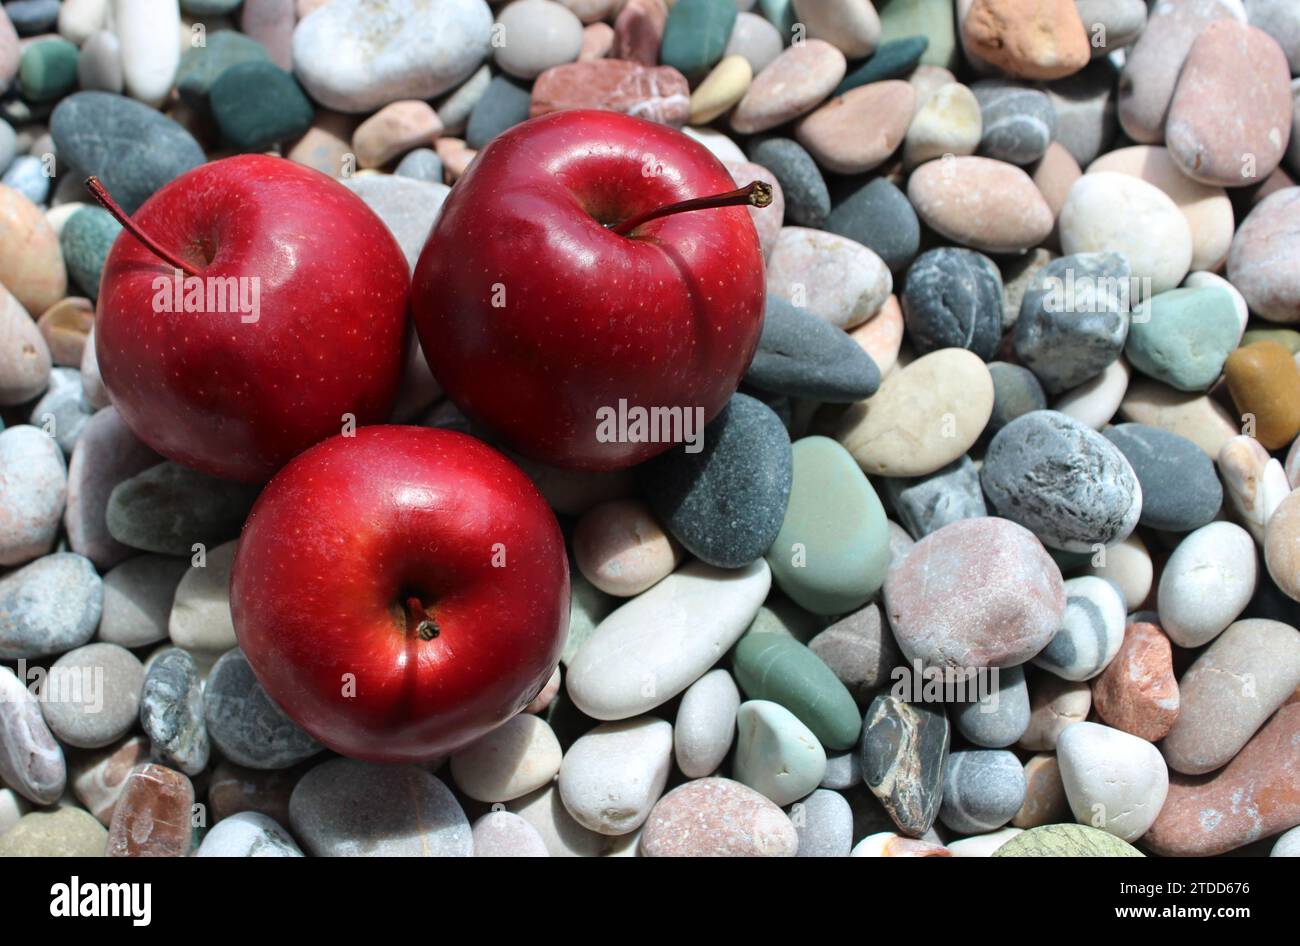 Das Sonnenlicht beleuchtet drei saftig rote Äpfel auf farbigen Steinen in einem Side of Image Konzept für Design oder Dekoration Stockfoto